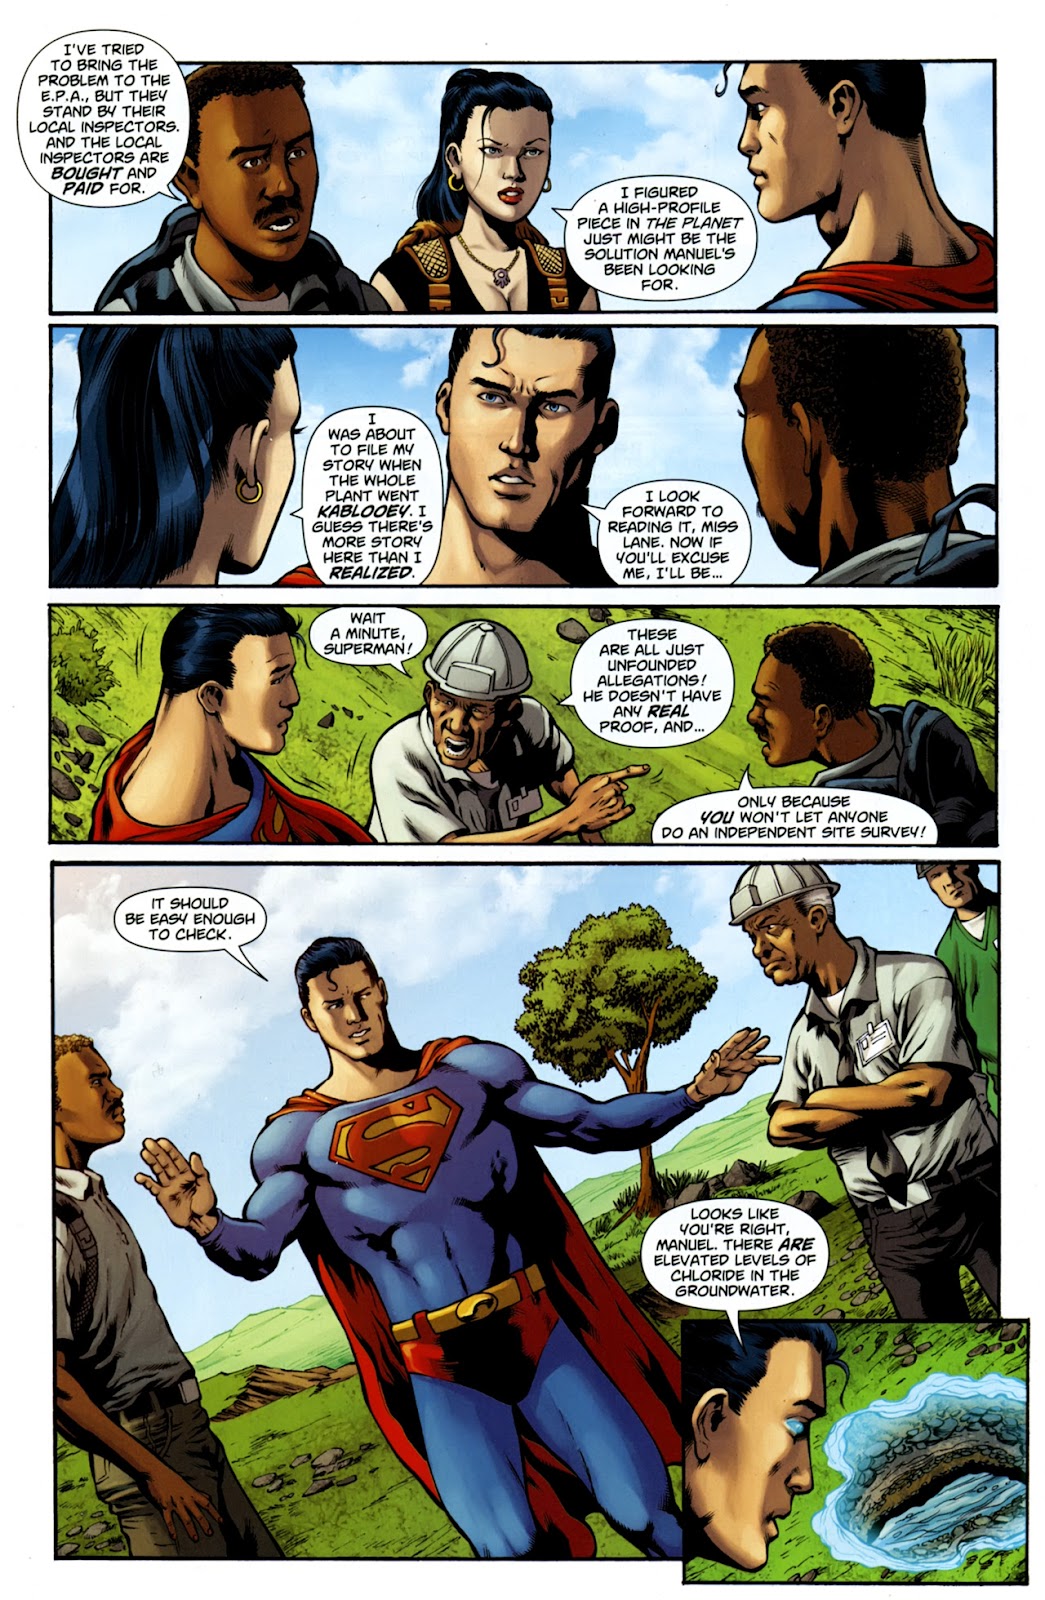 Superman v1 707 | Read All Comics Online